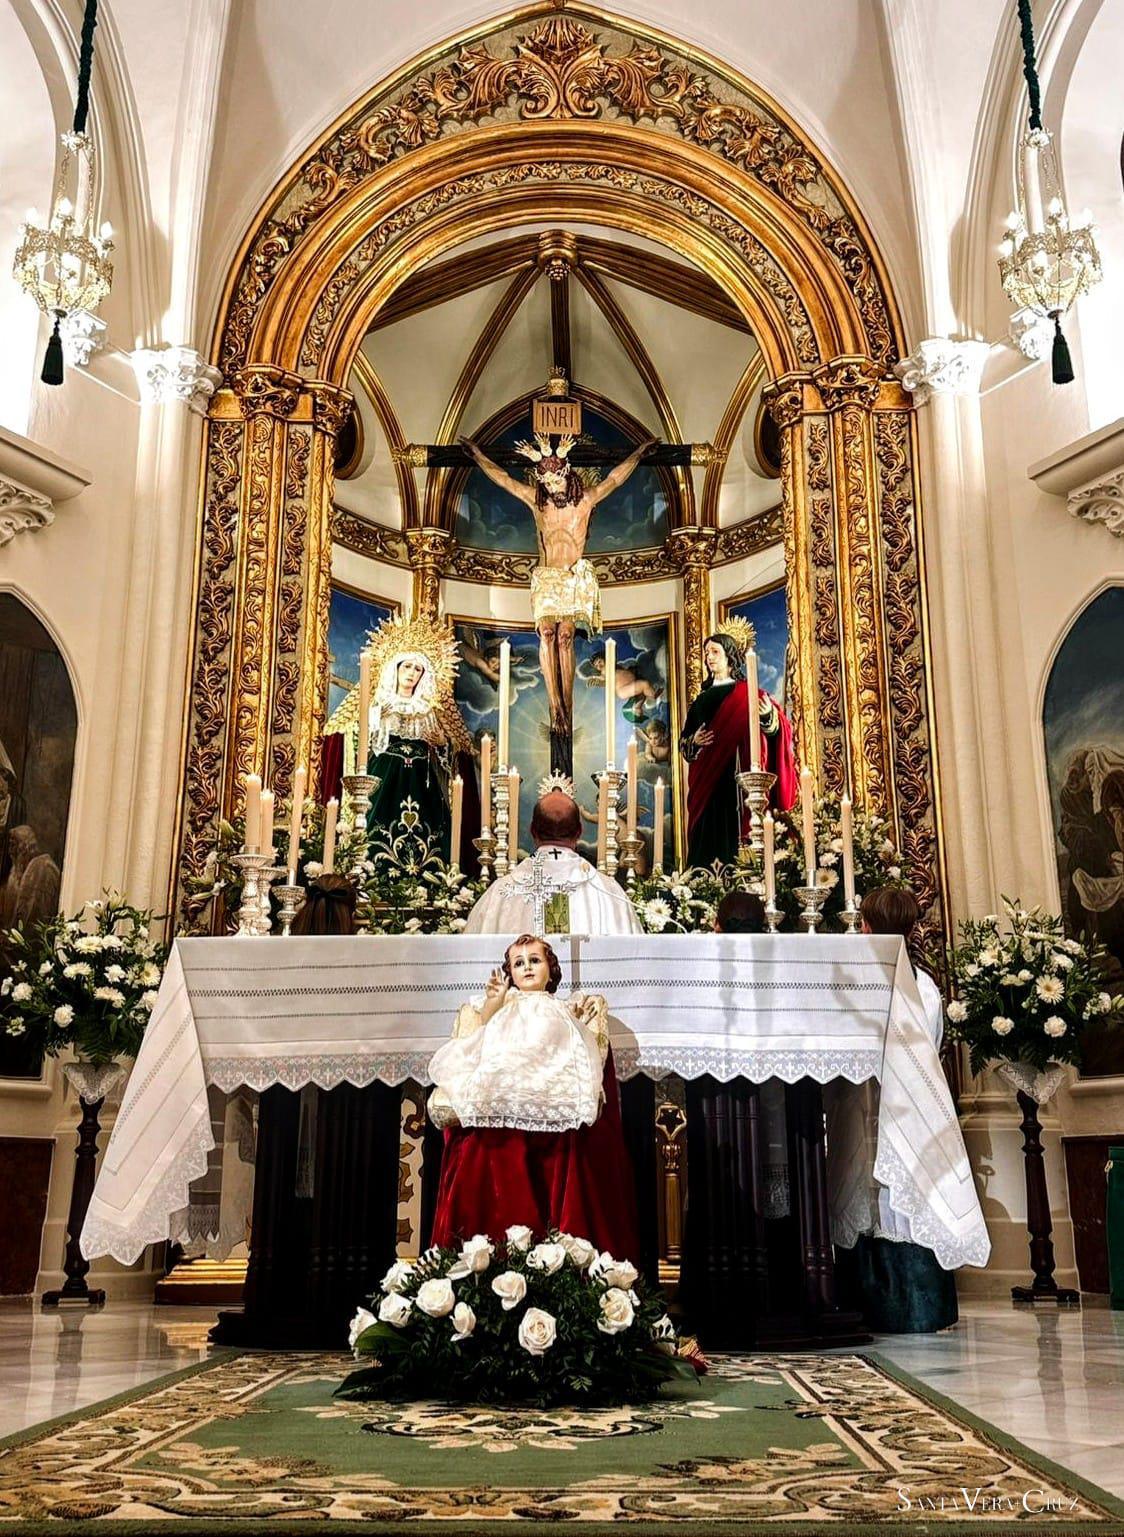 Festividad de la Presentación de Nuestro Señor en el Templo y Purificación de la Virgen María, La Candelaria.